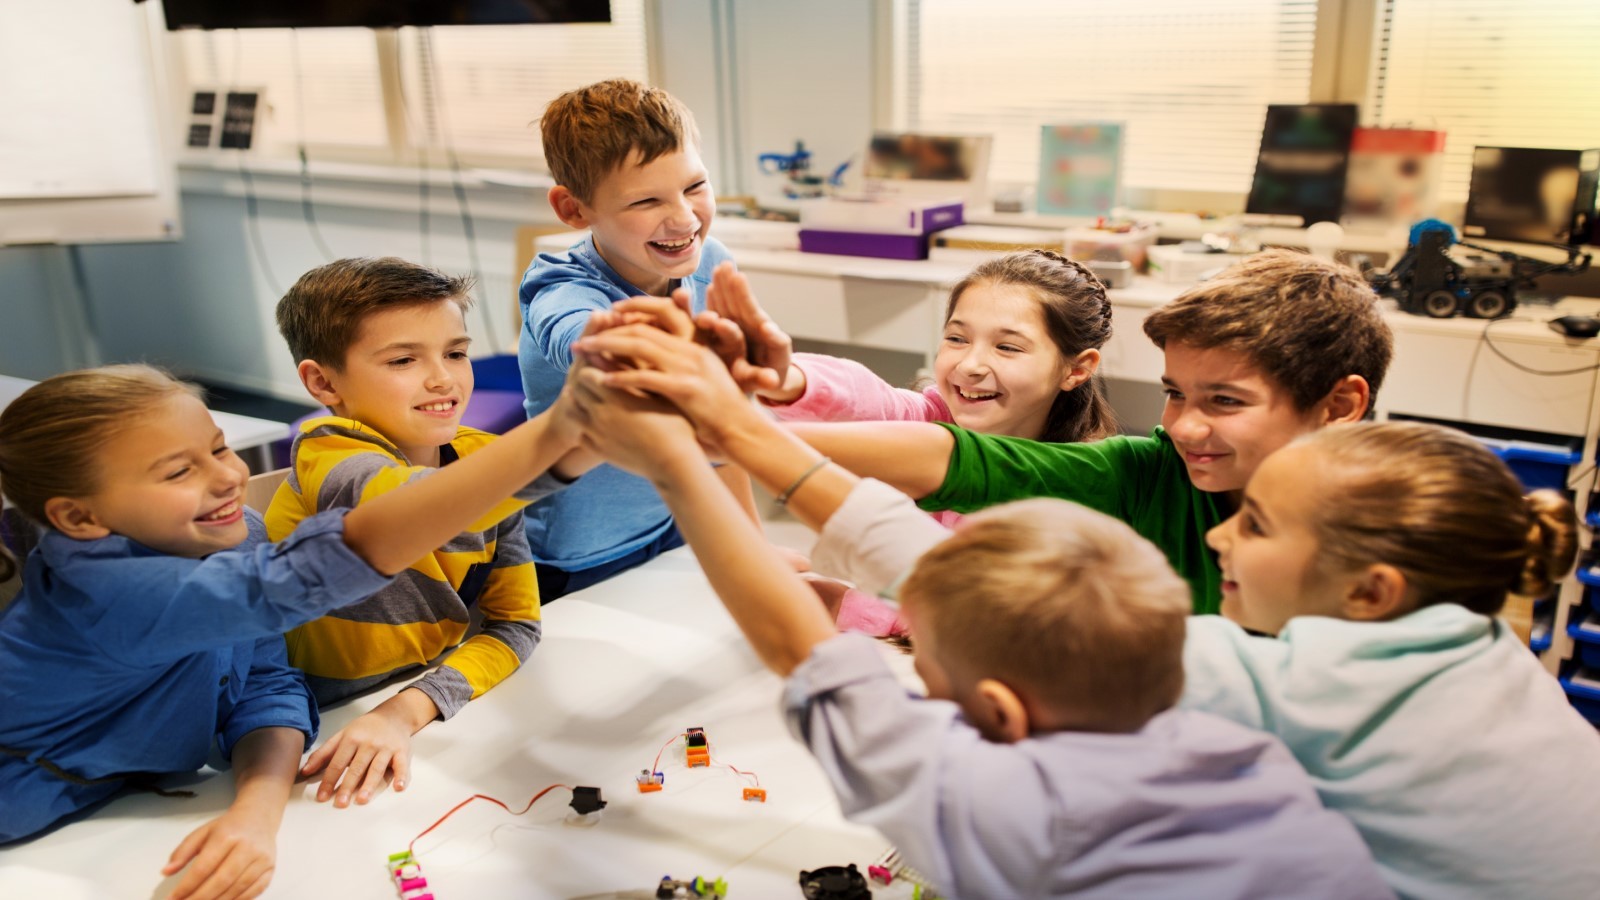 Børn ved et bord, der stabler deres hænder oven på hinanden som ved et kampråb